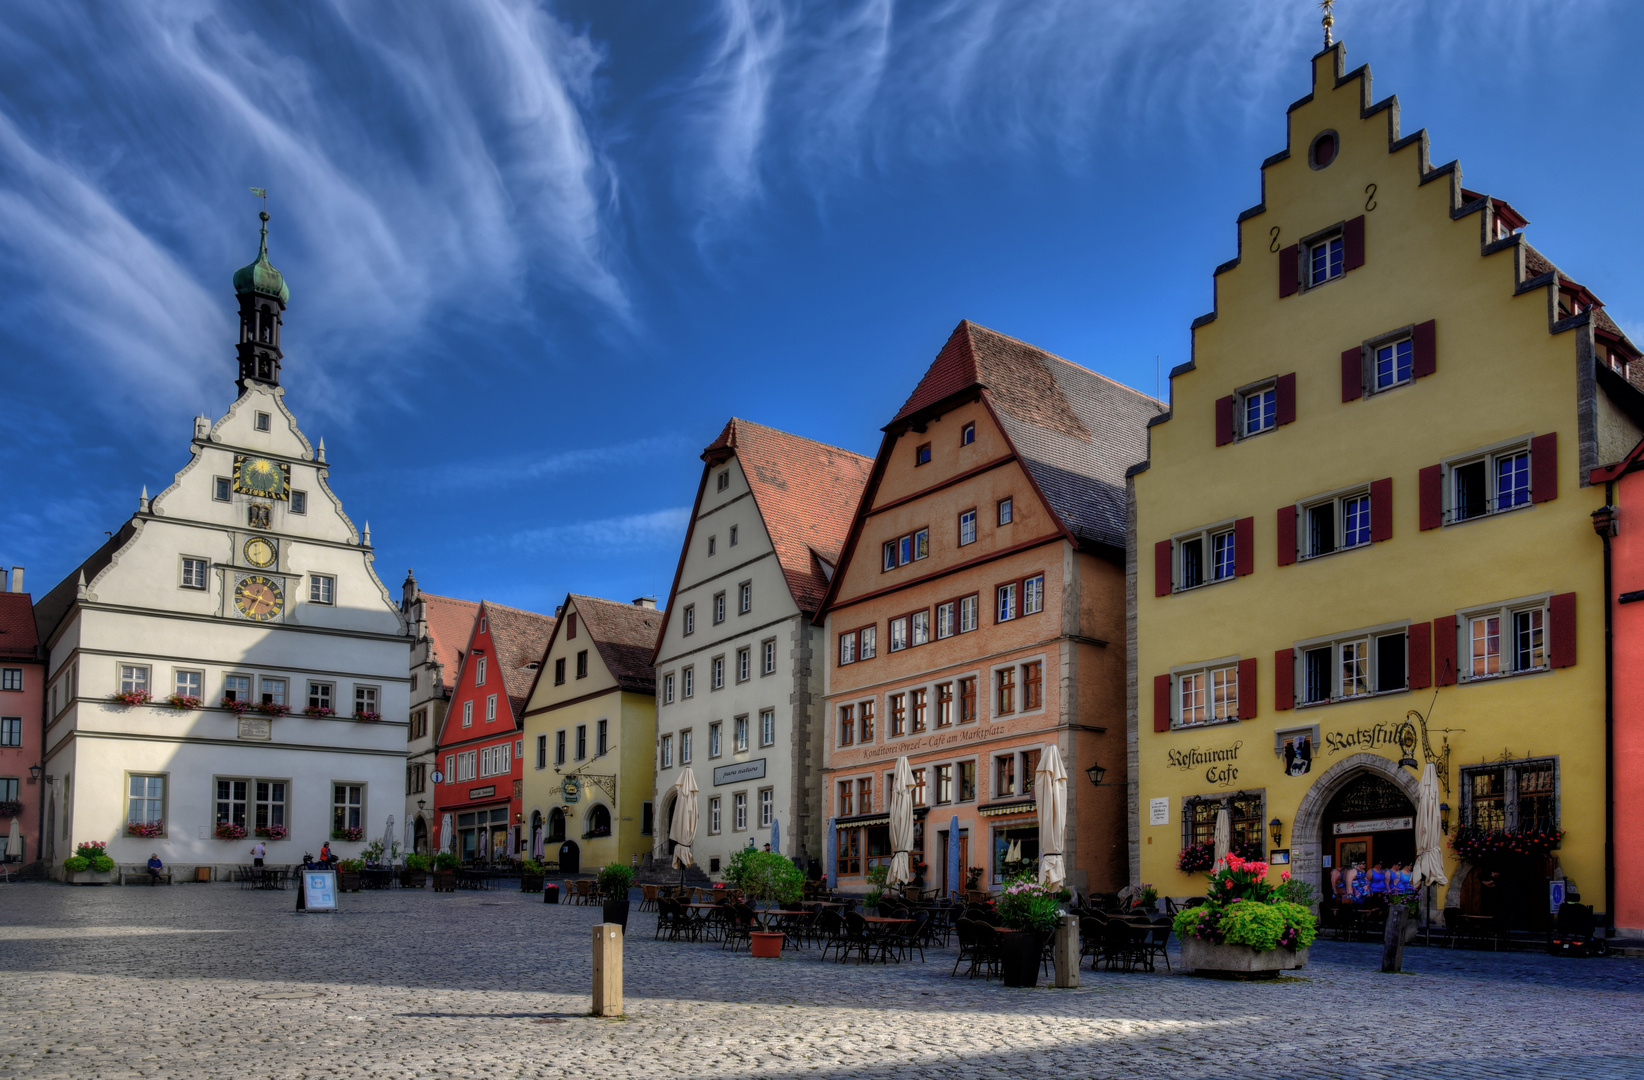 Marktplatz von Rothenburg ob der Tauber